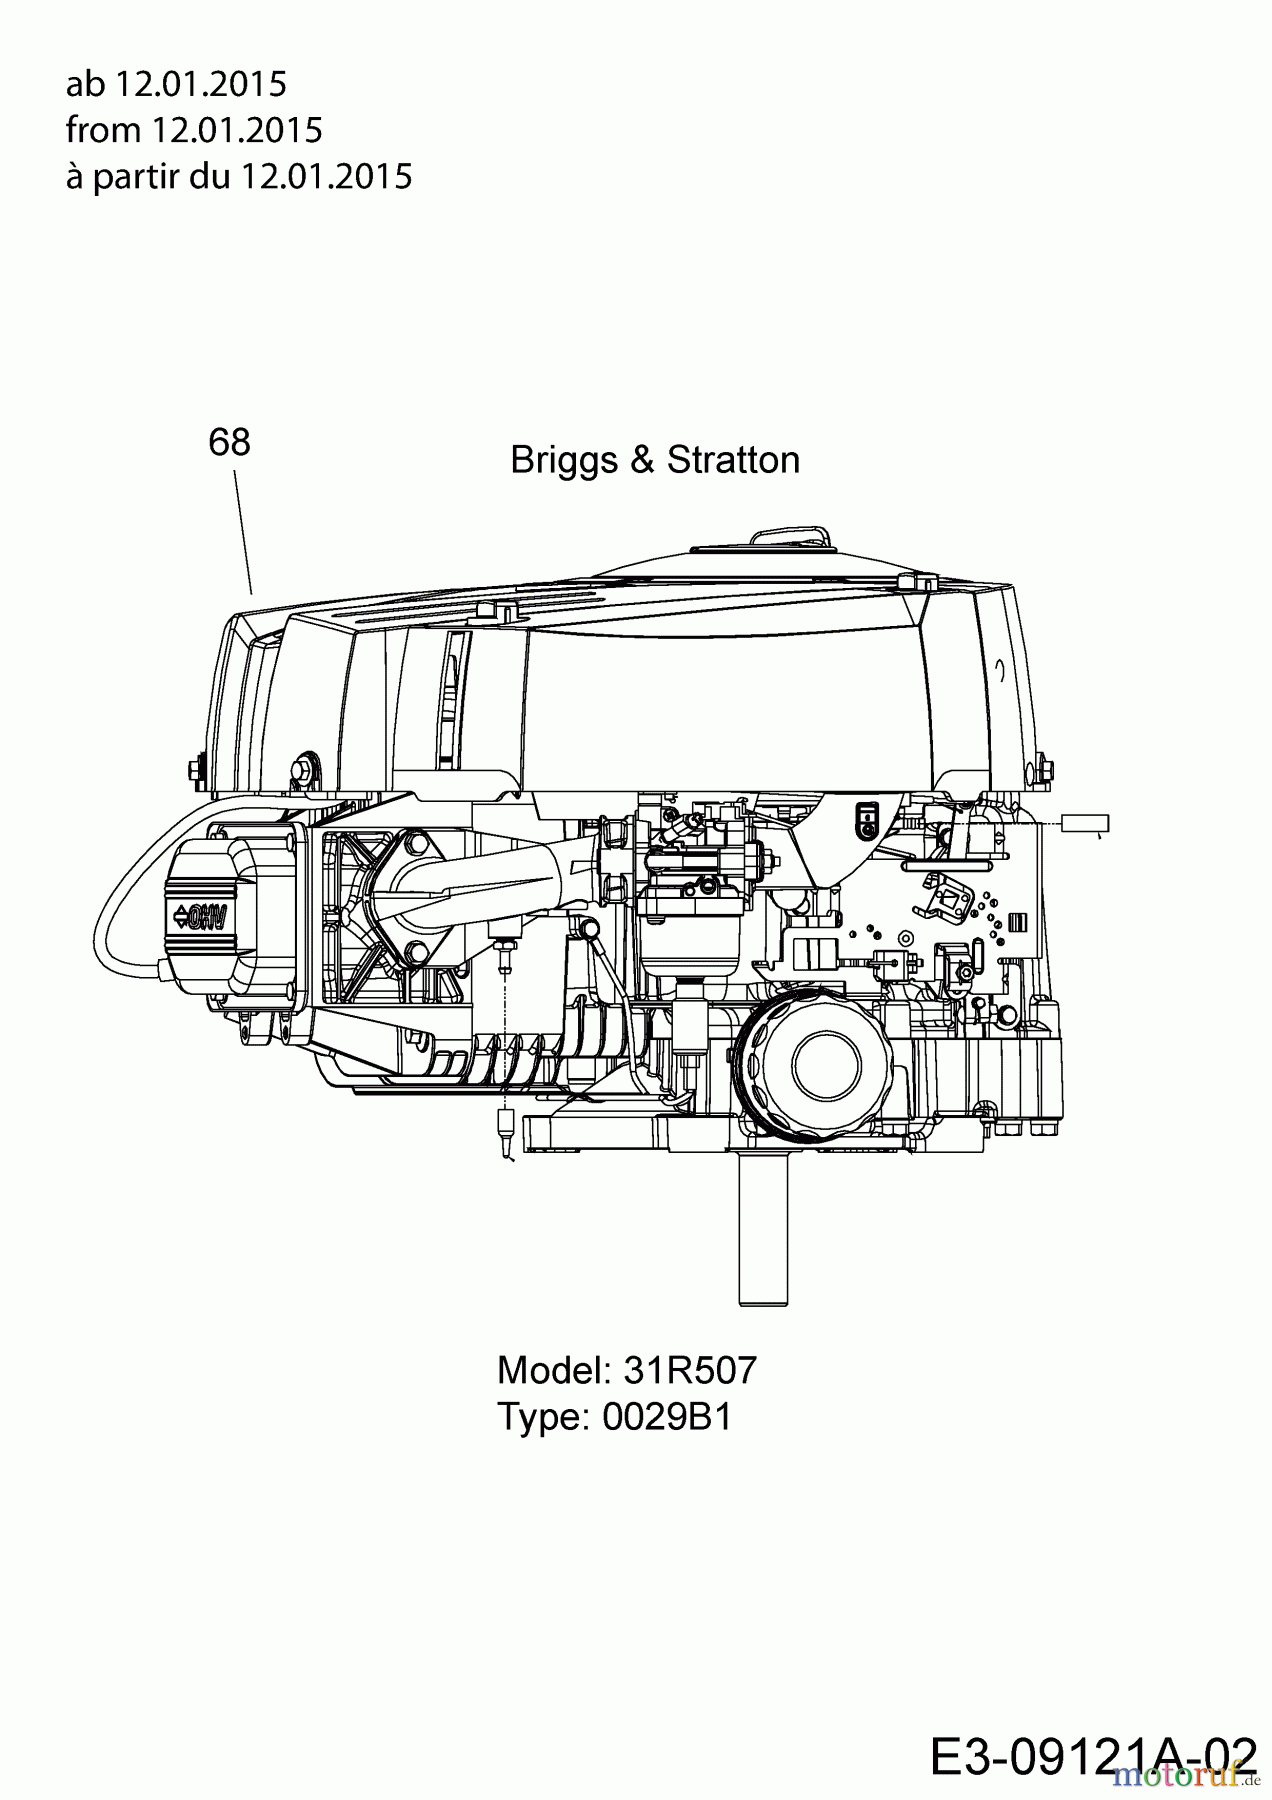  B Power Tracteurs de pelouse BT 155-96 LH 2 13HM79KF648  (2015) Moteur Briggs & Stratton ab 12.01.2015